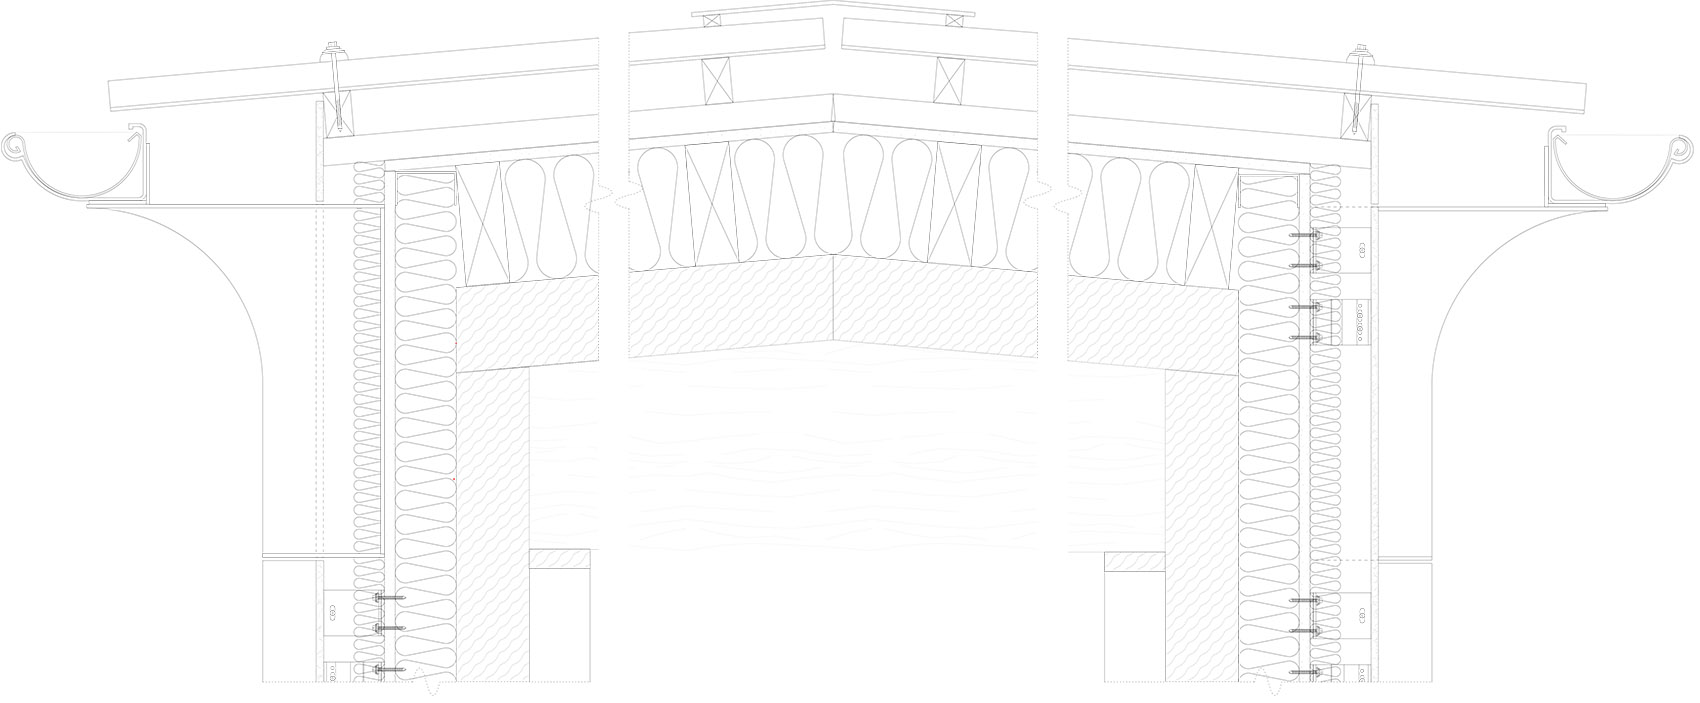 David Brownlow剧场，英国/校园生活的舞台-86